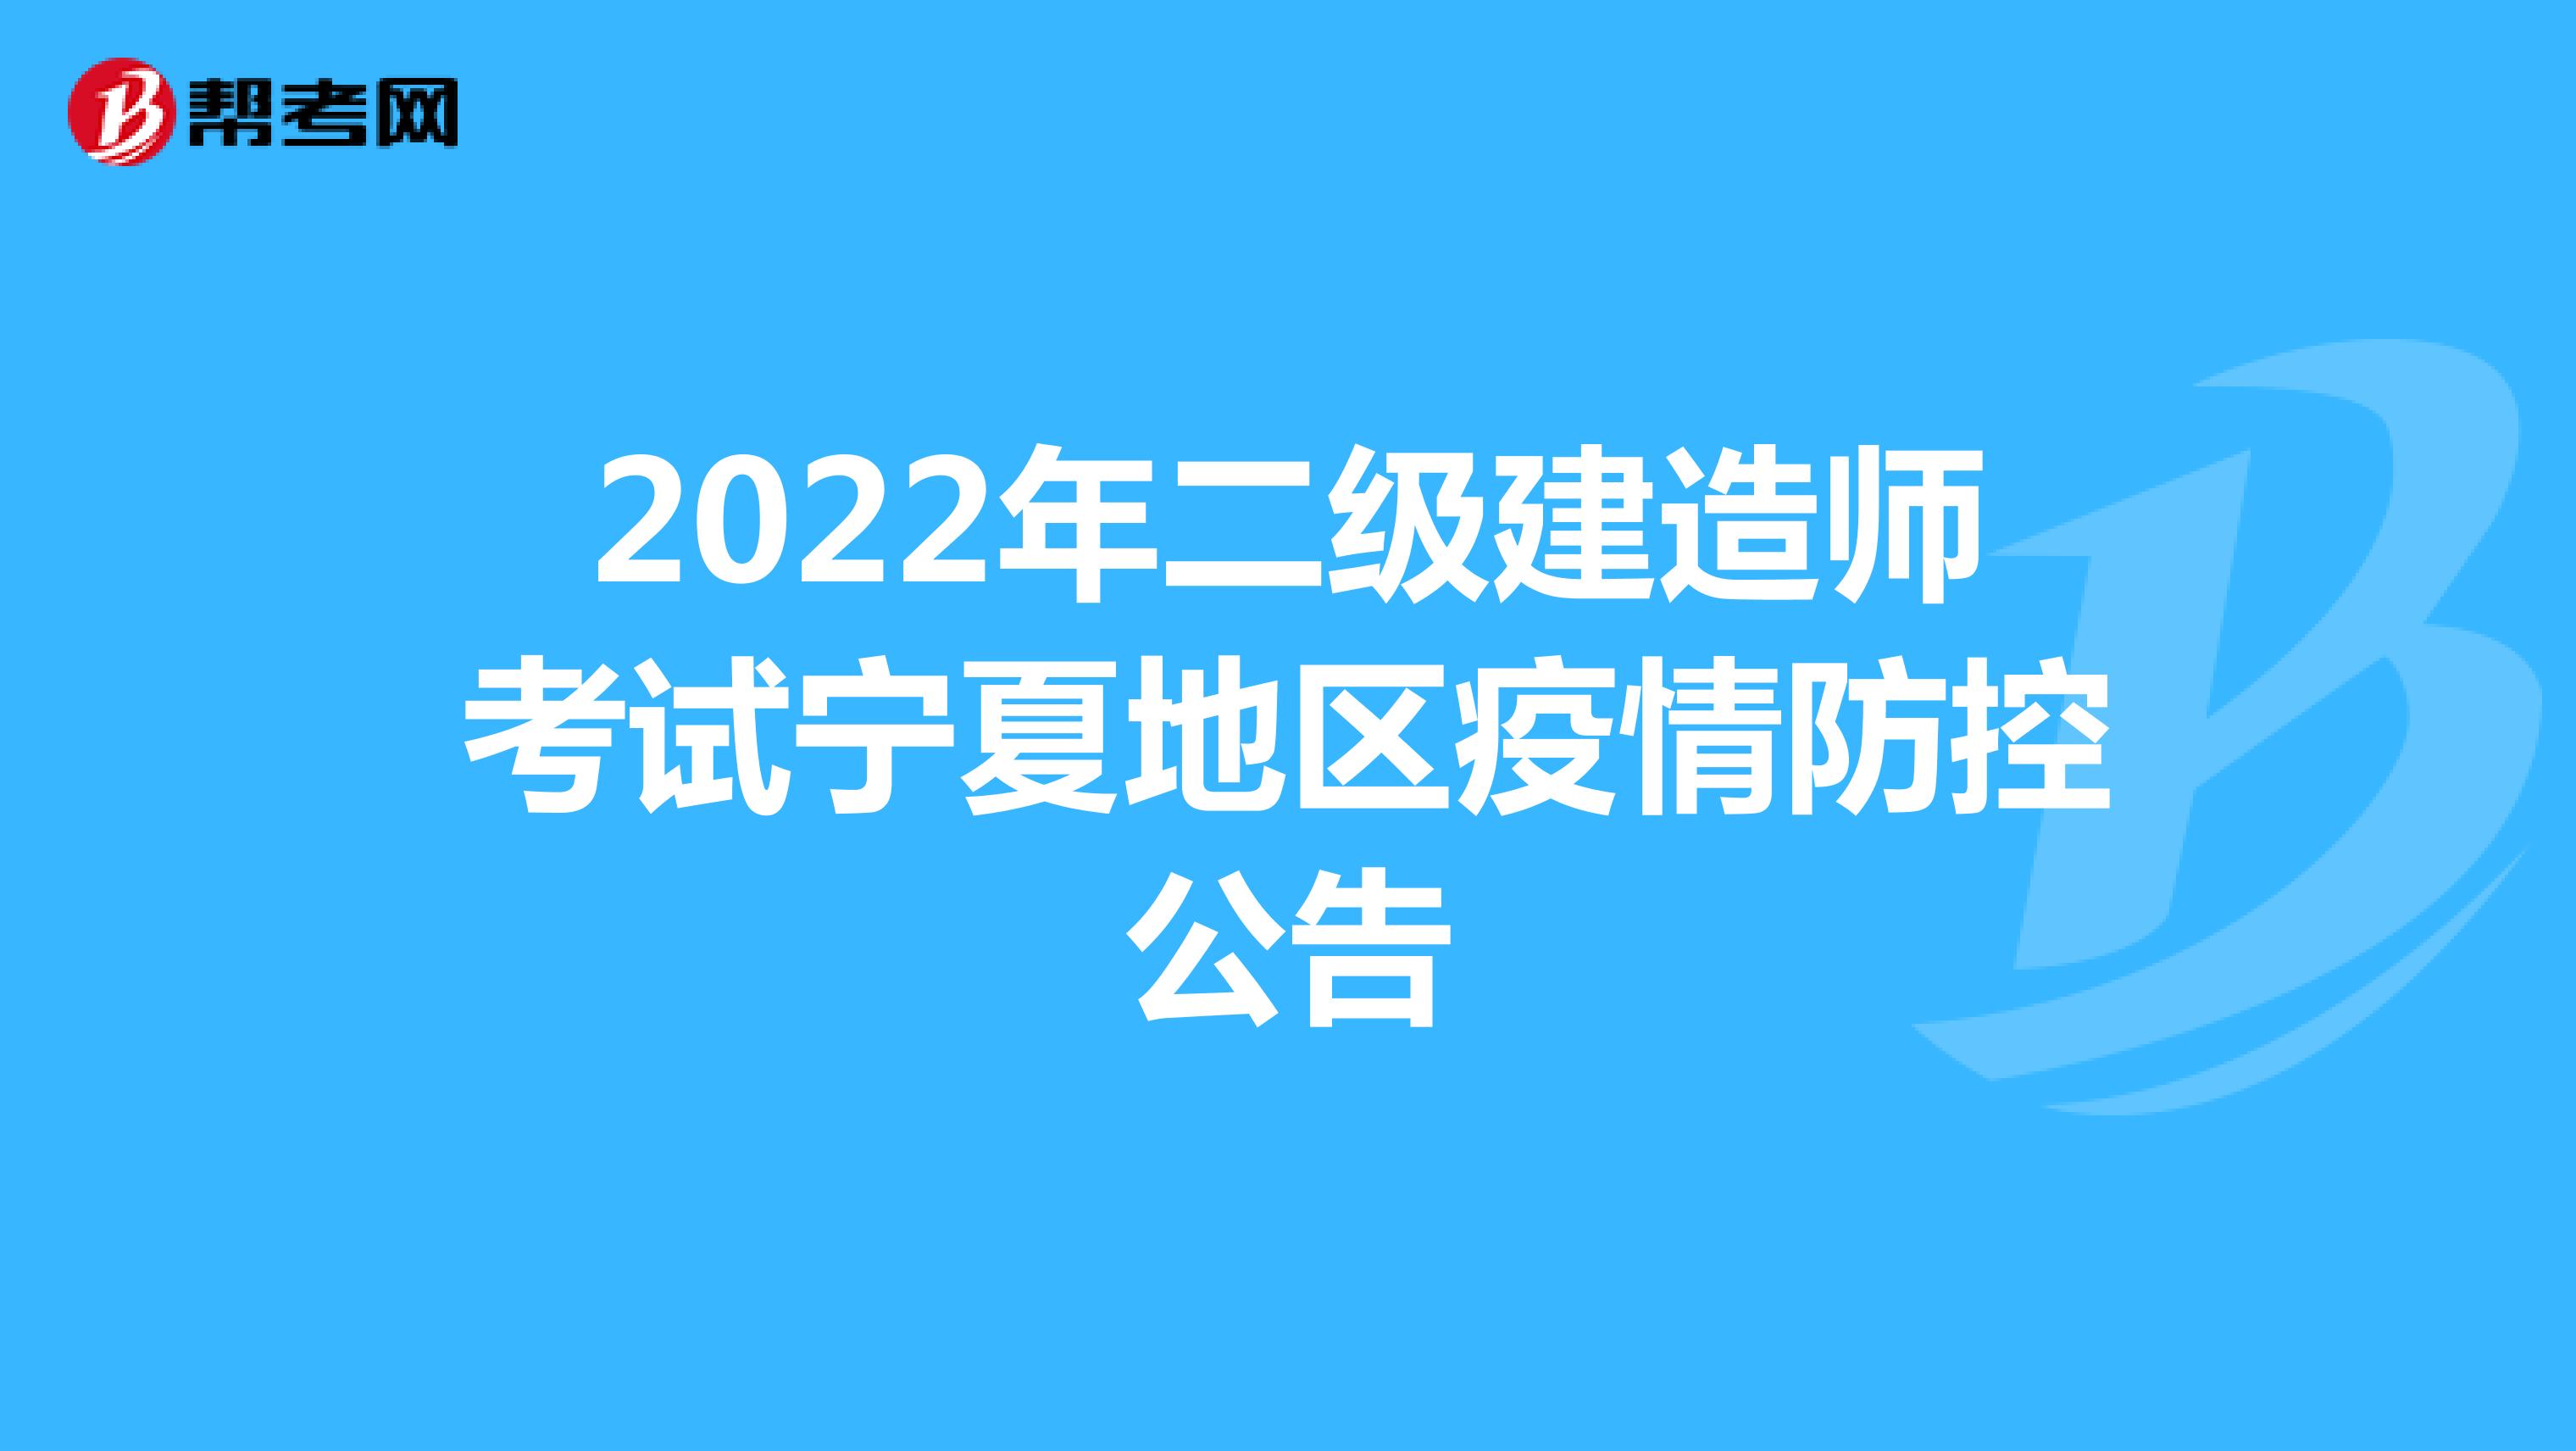 2022年二级建造师考试宁夏地区疫情防控公告